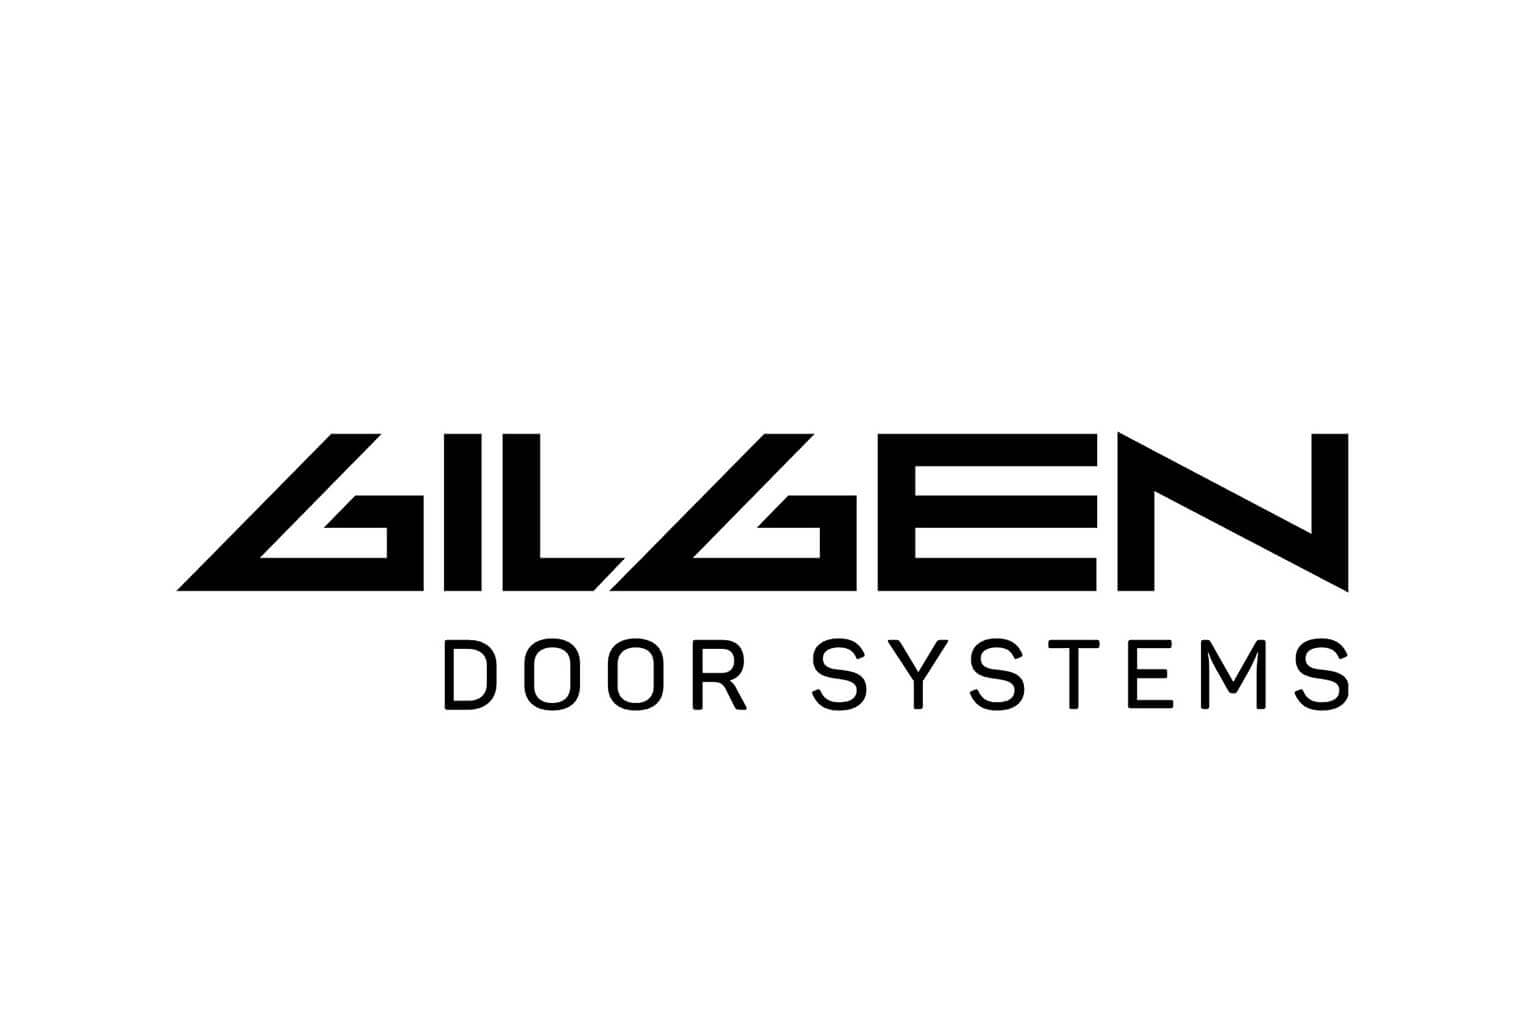 Gilgen Doors Systems